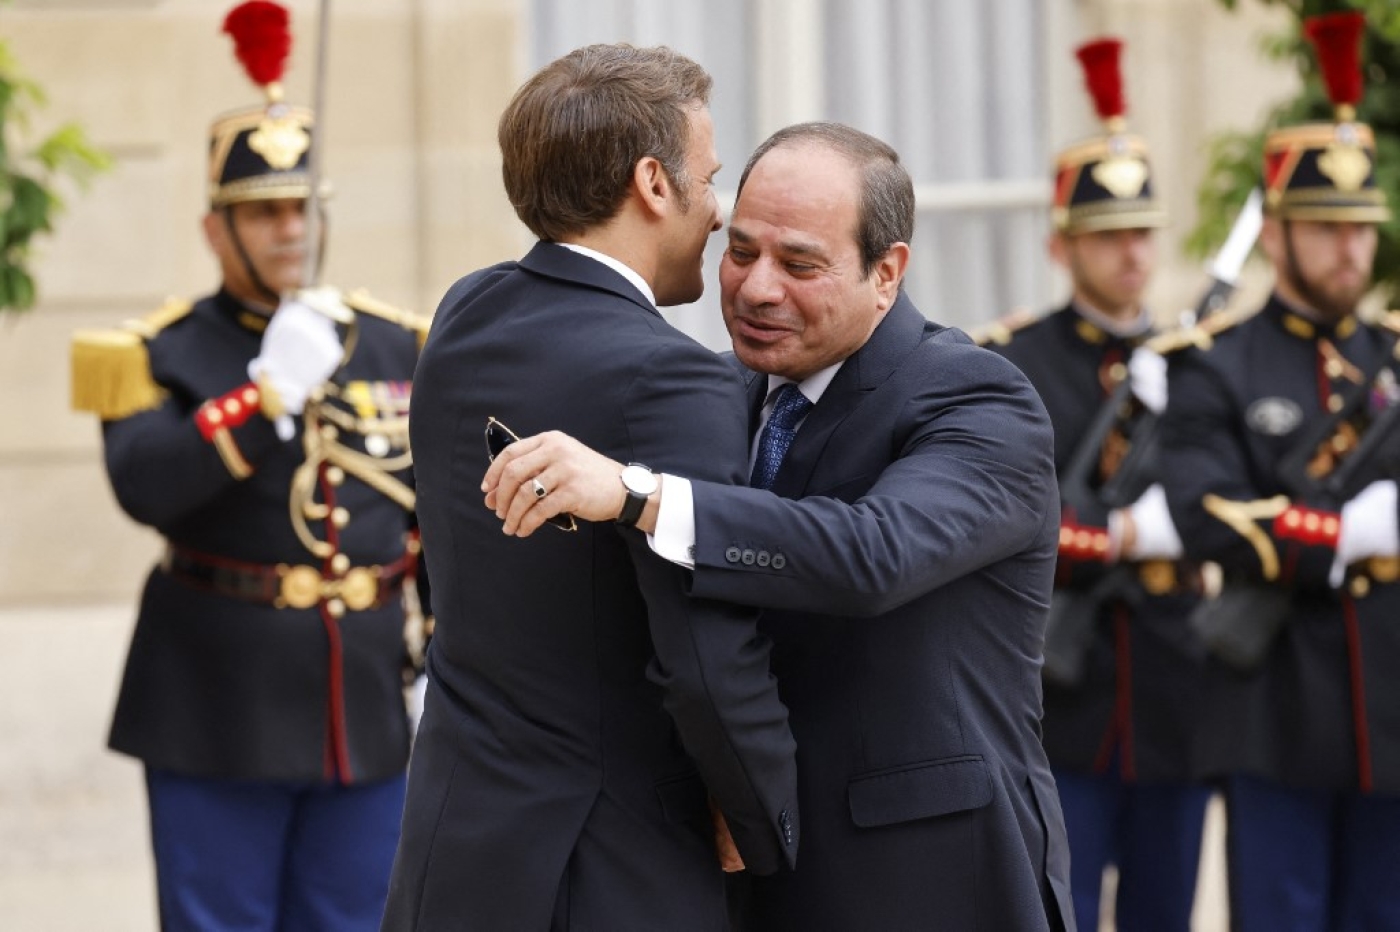 Le président français Emmanuel Macron reçoit à l’Élysée son homologue égyptien Abdelfatah al-Sissi, le 22 juillet 2022 (AFP/Ludovic Marin)